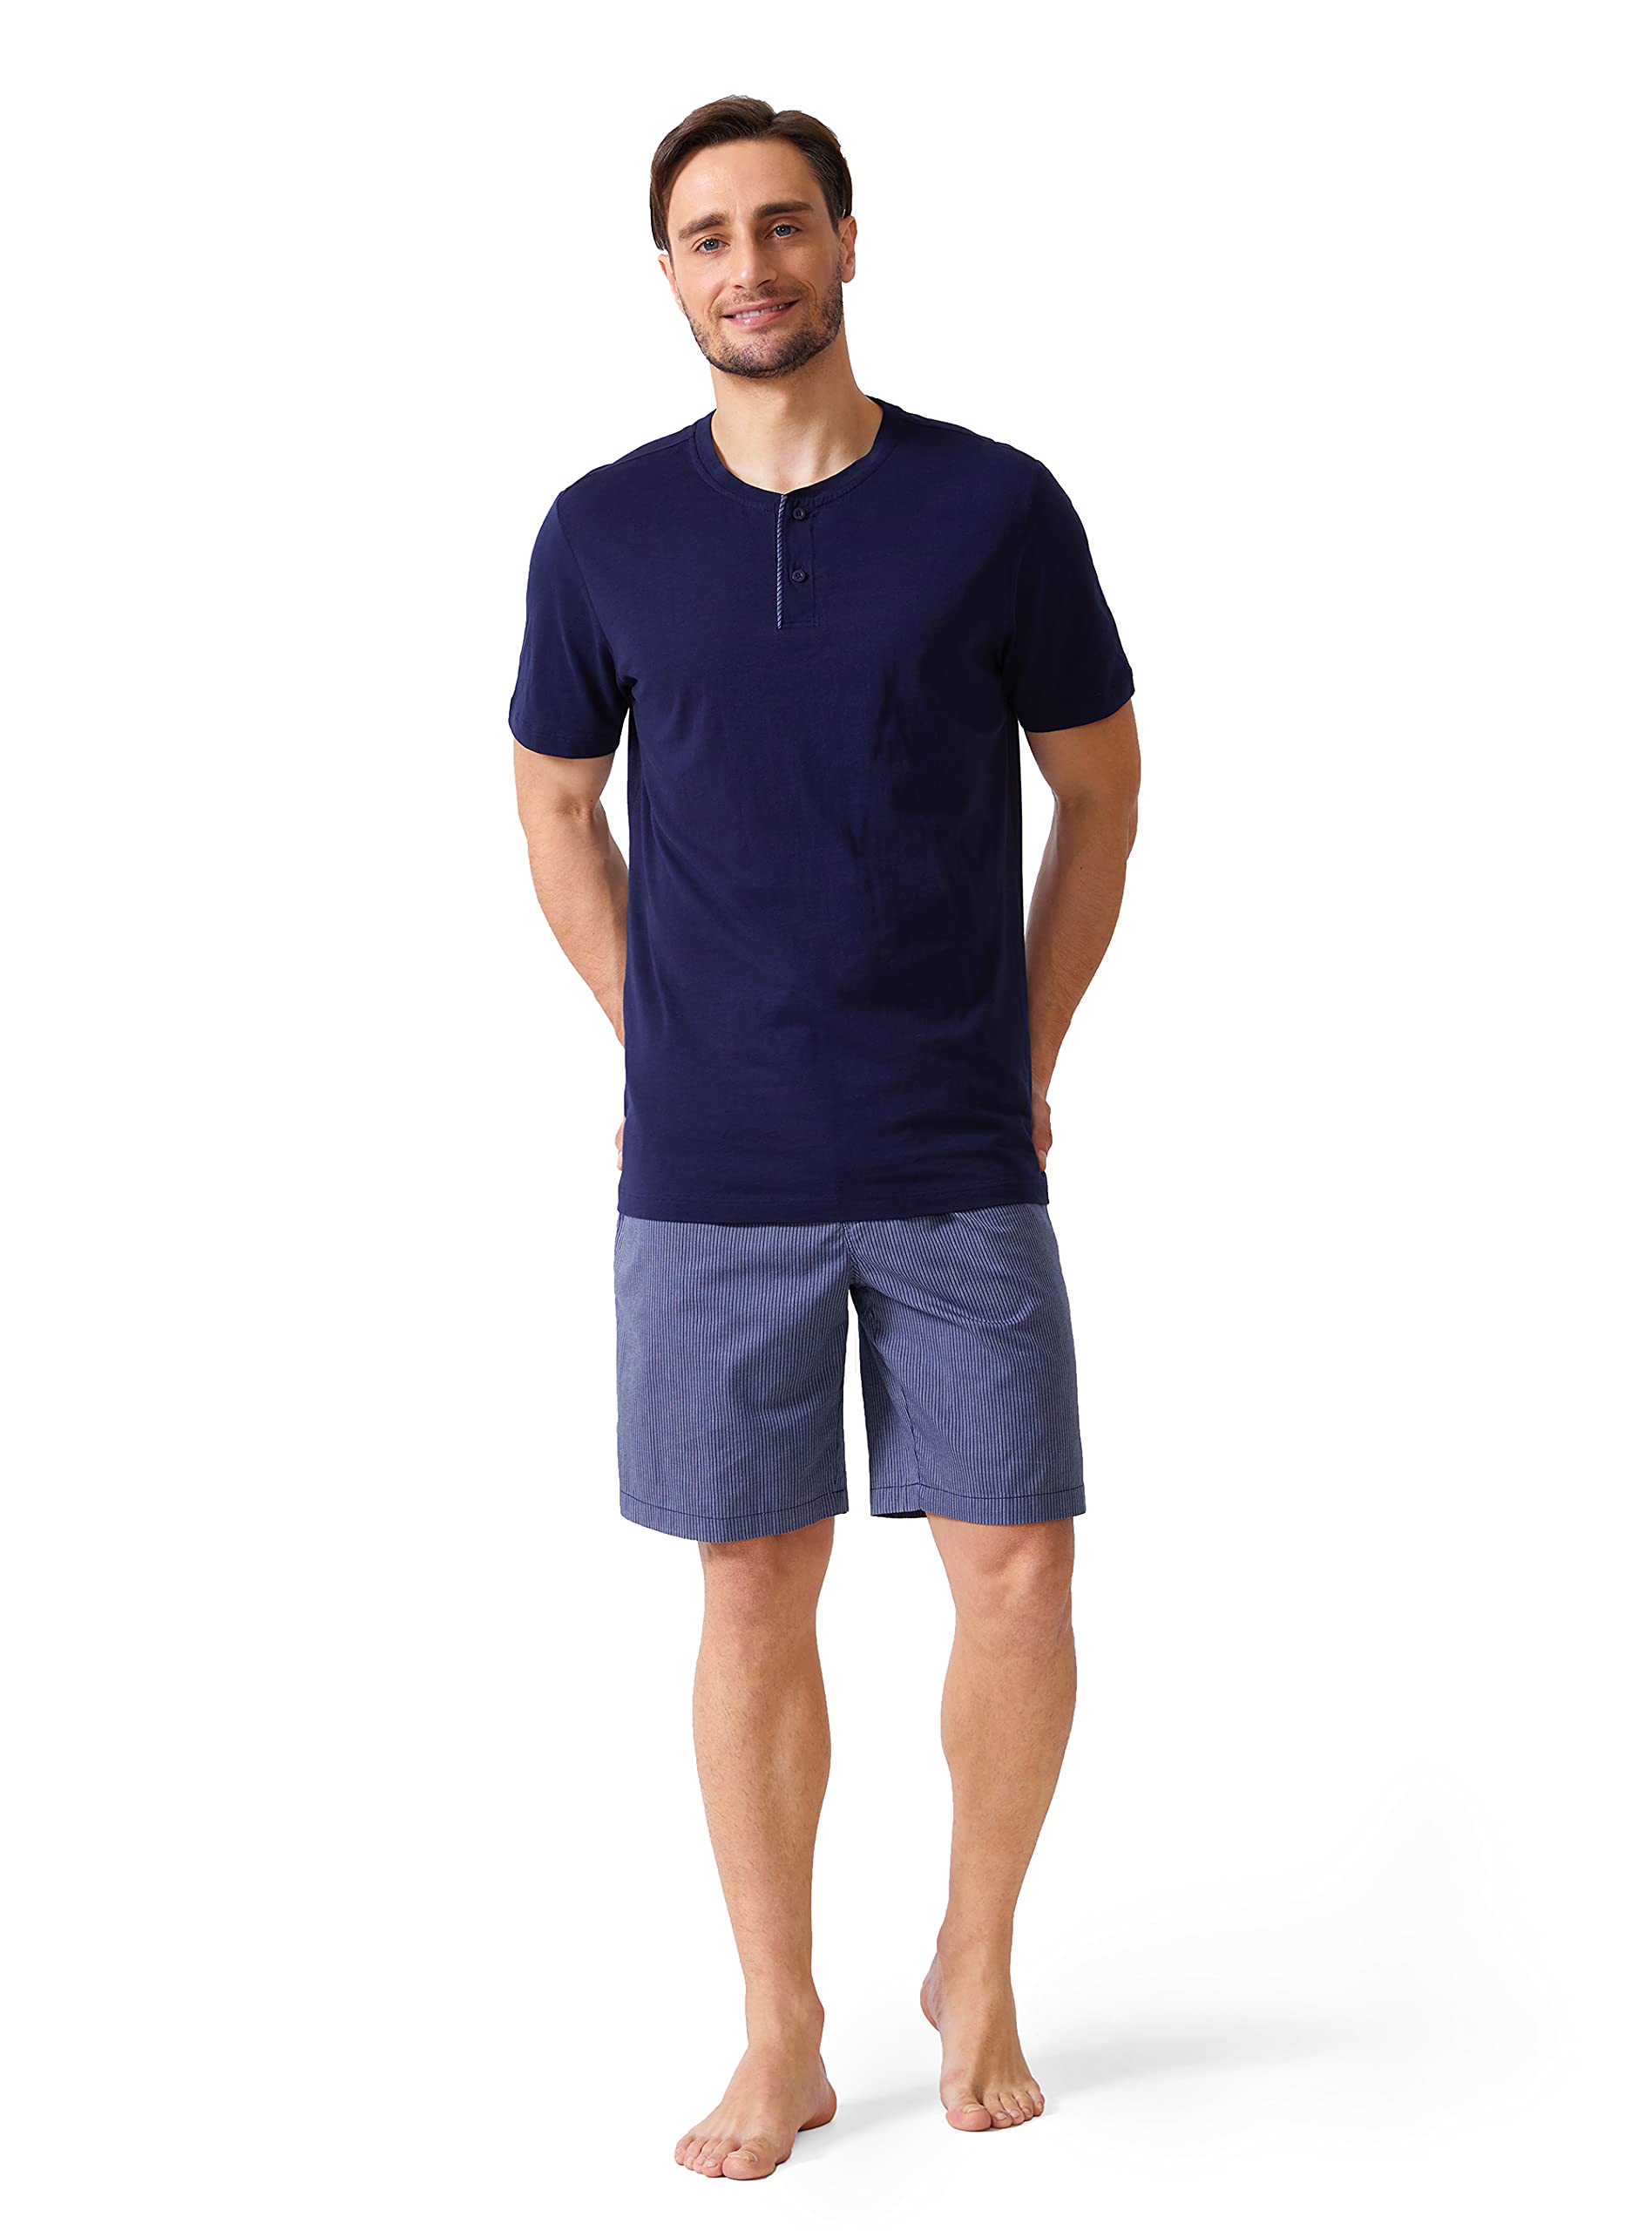 DAVID ARCHY Herren 100% Baumwolle Schlafanzug Zweiteiliger Nachtwäsche Kurzarm Shirt und Hose mit Knopfleiste Taschen und Band Streifen Kariert